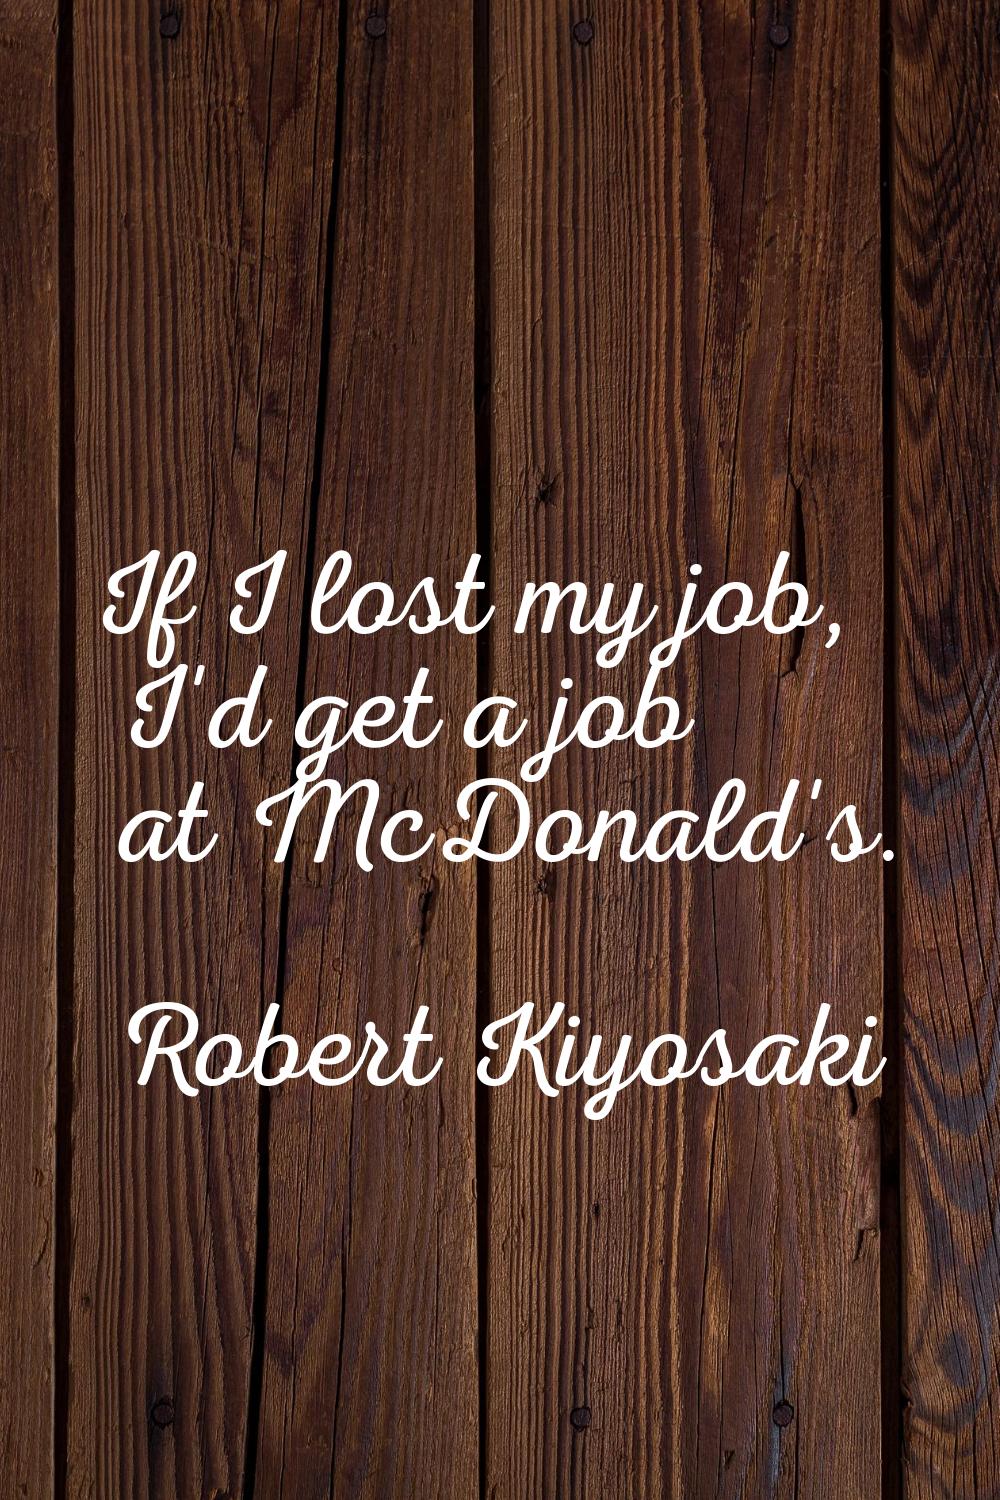 If I lost my job, I'd get a job at McDonald's.